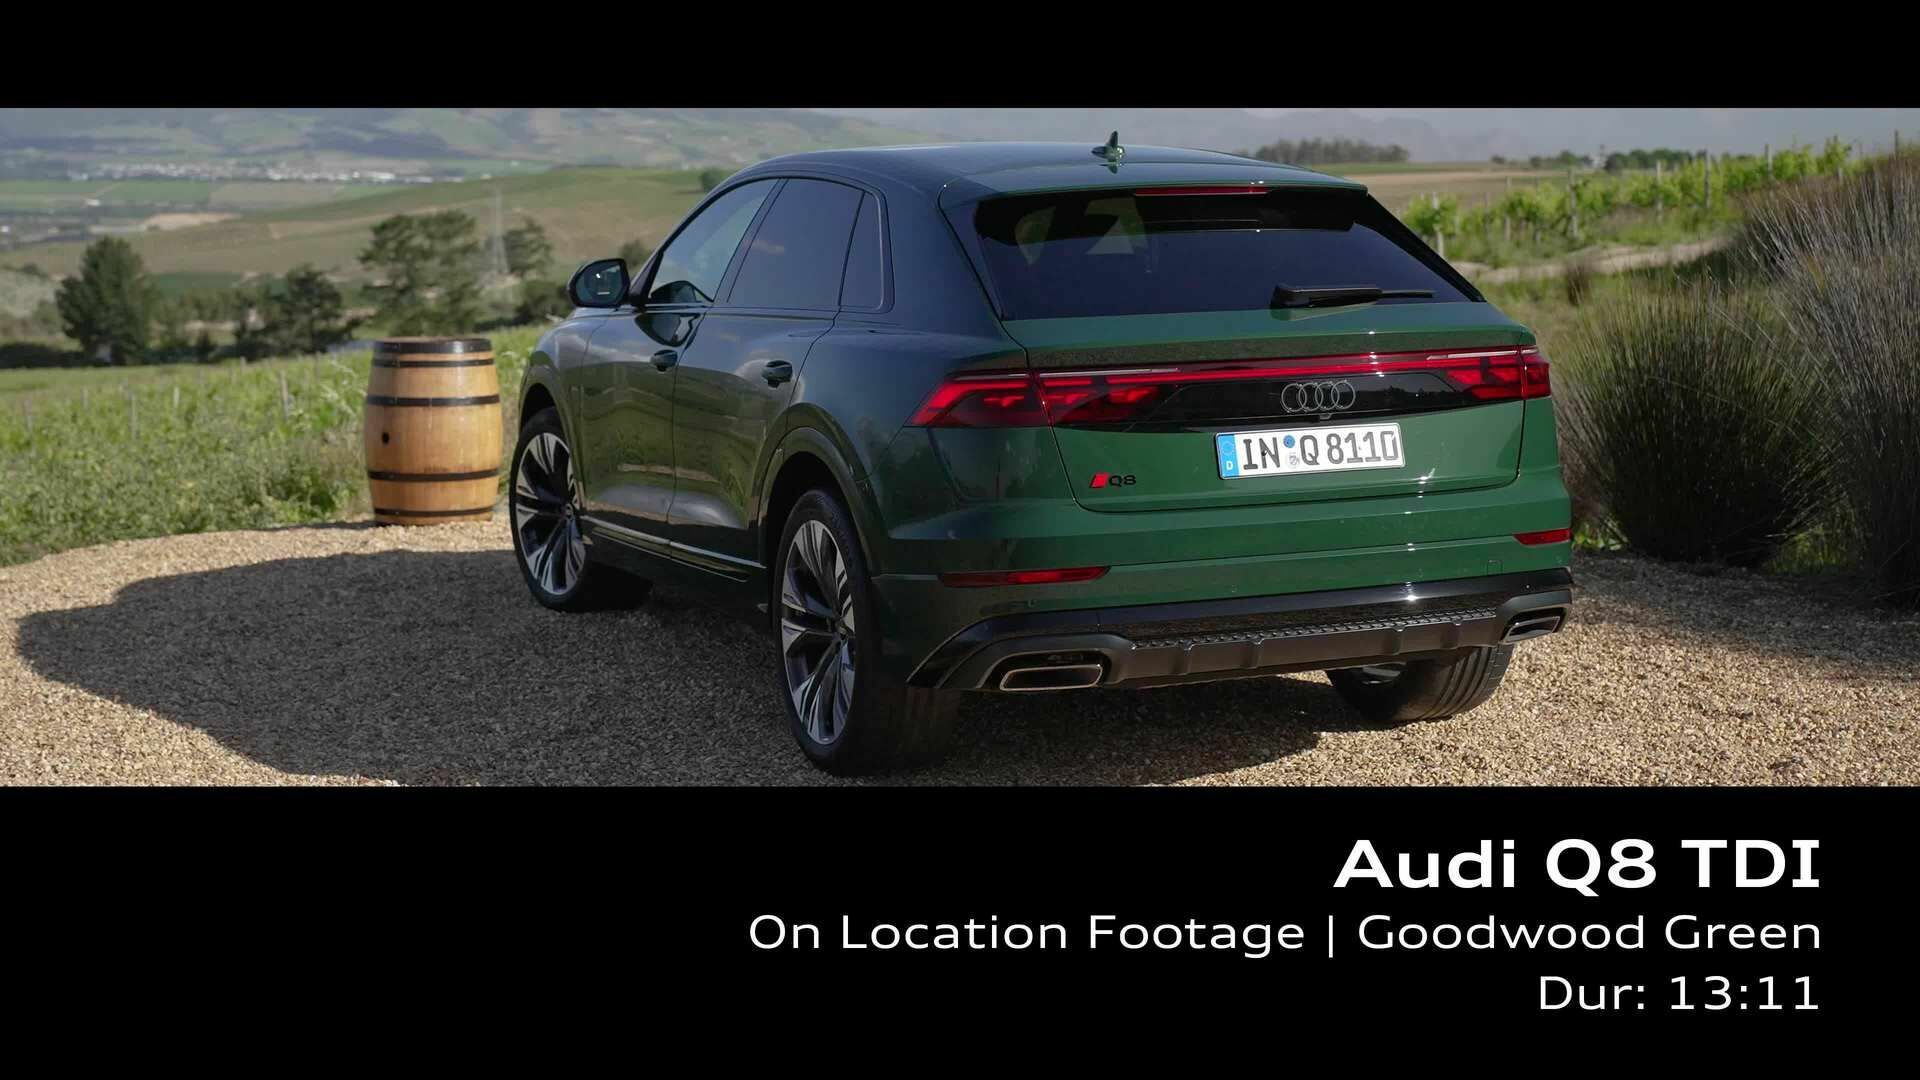 Audi Q8 TDI Goodwood Green – Footage